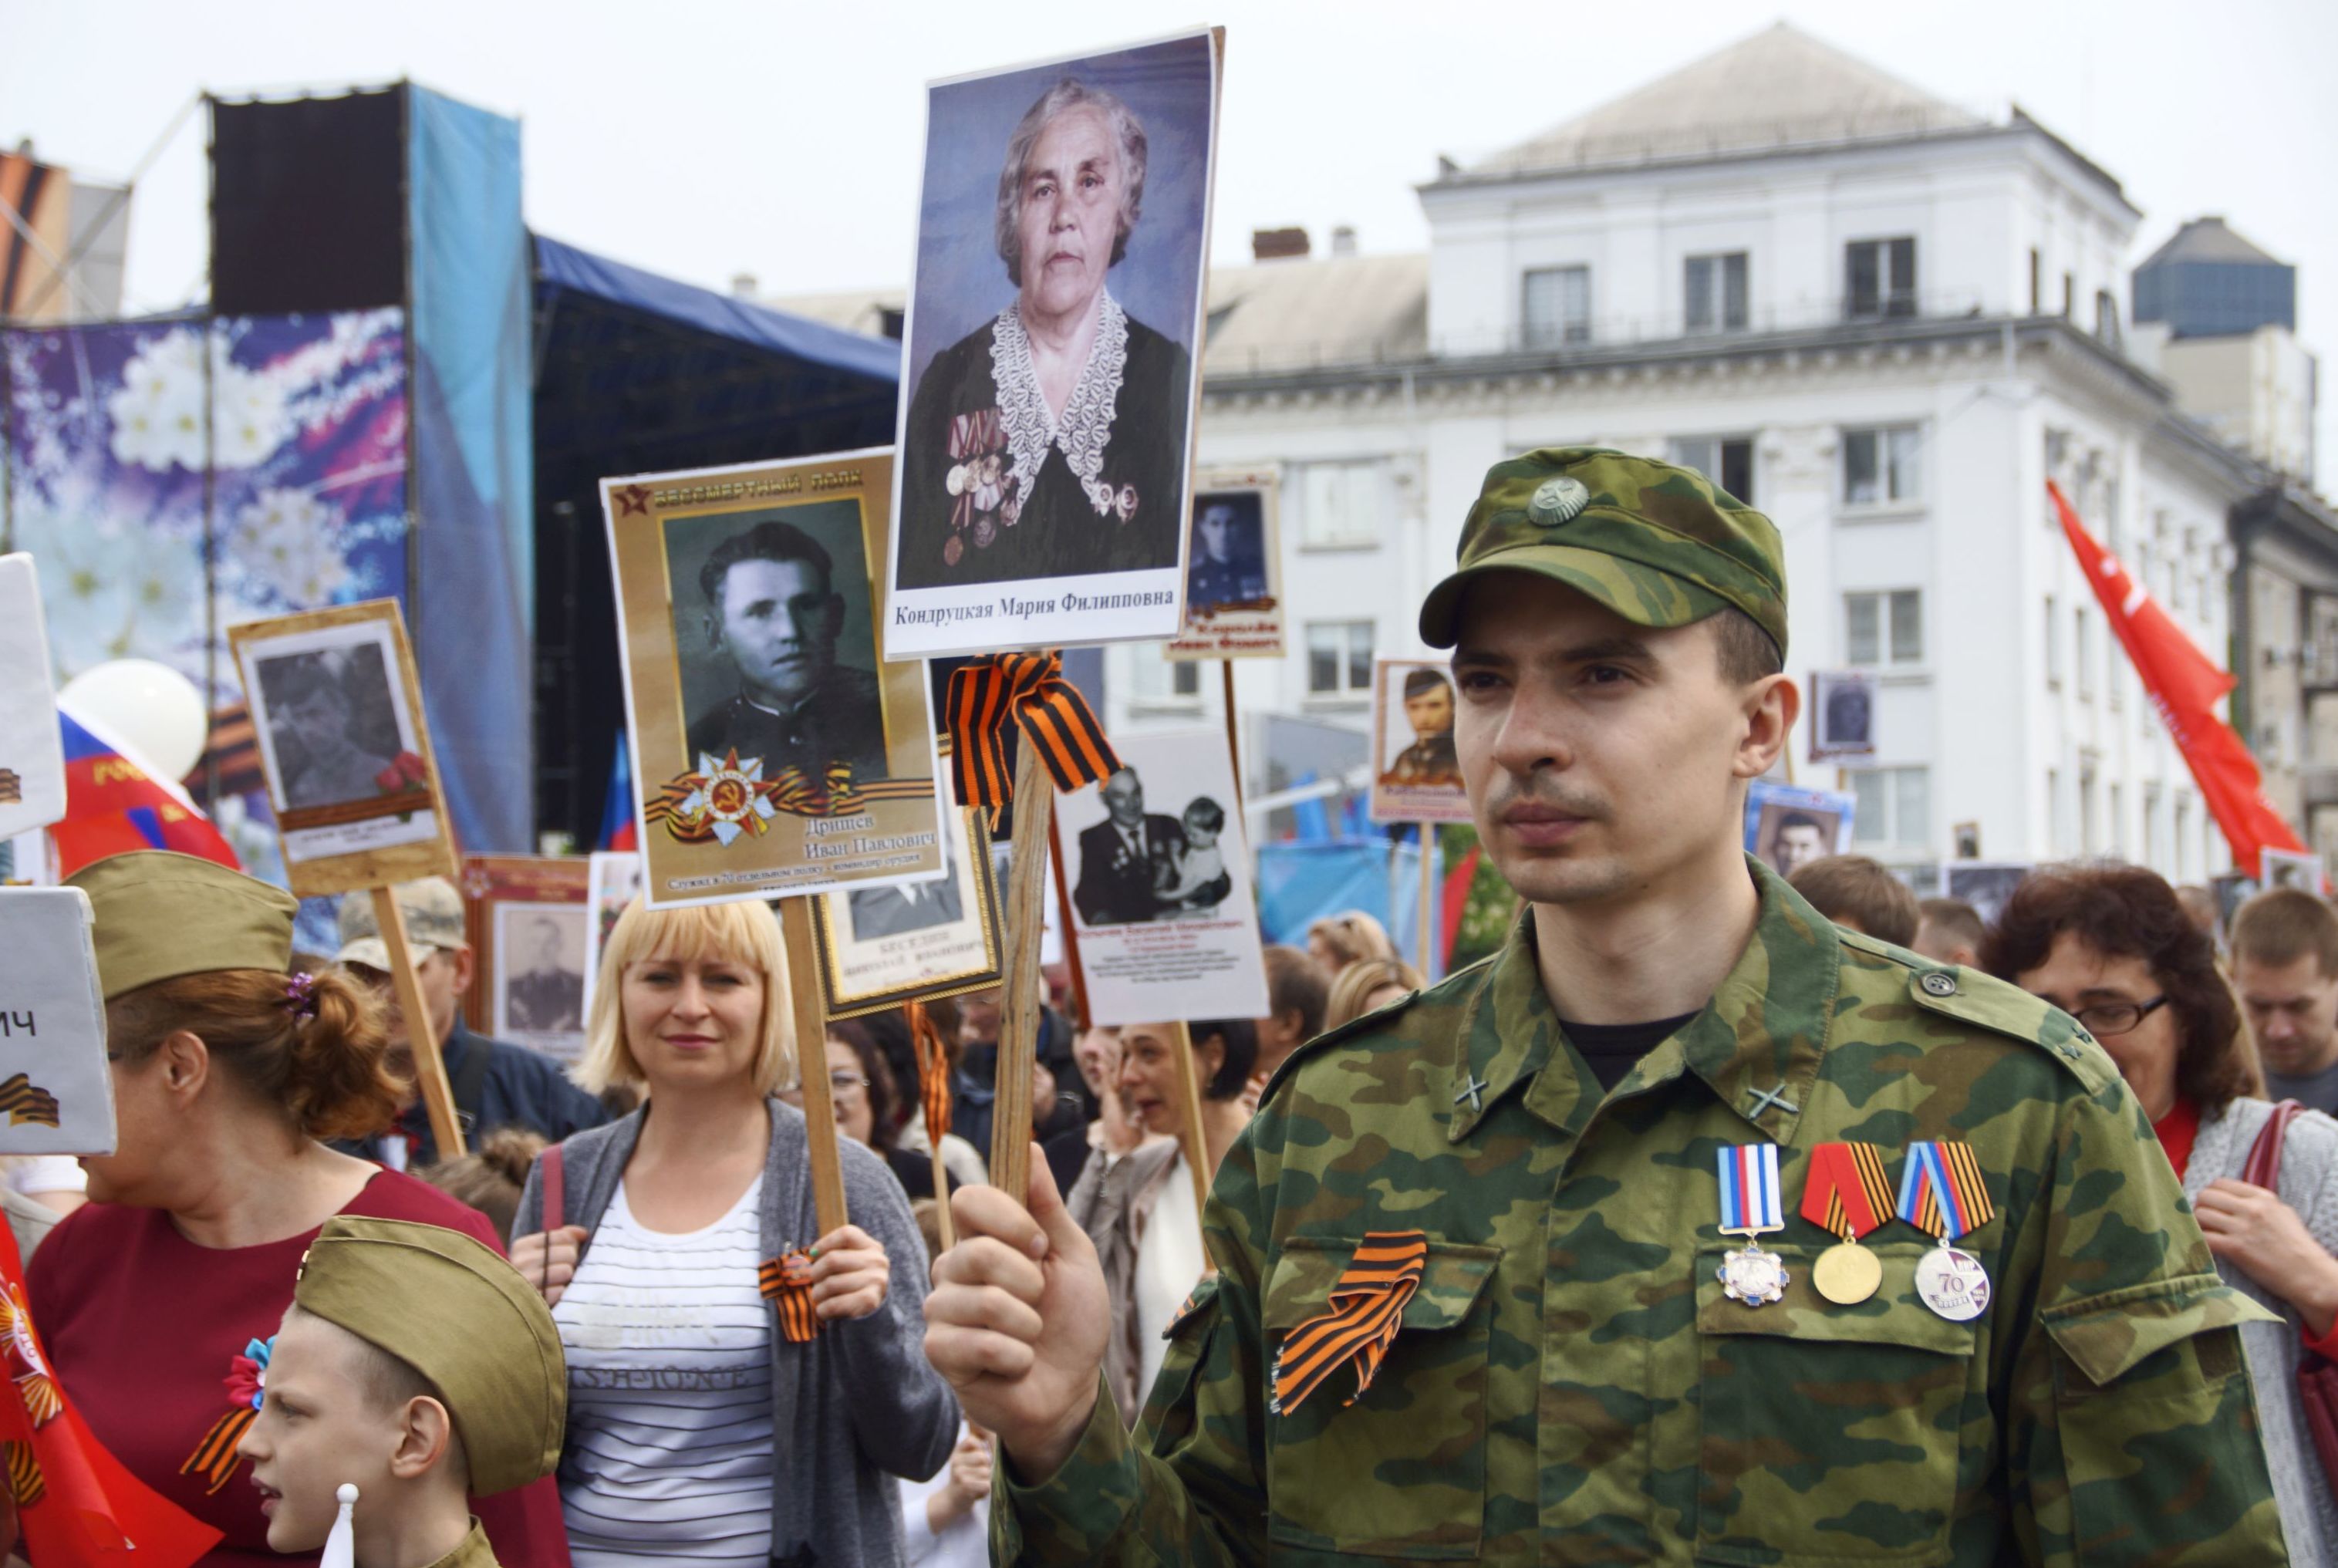 Участники акции "Бессмертный полк" в Луганске.  